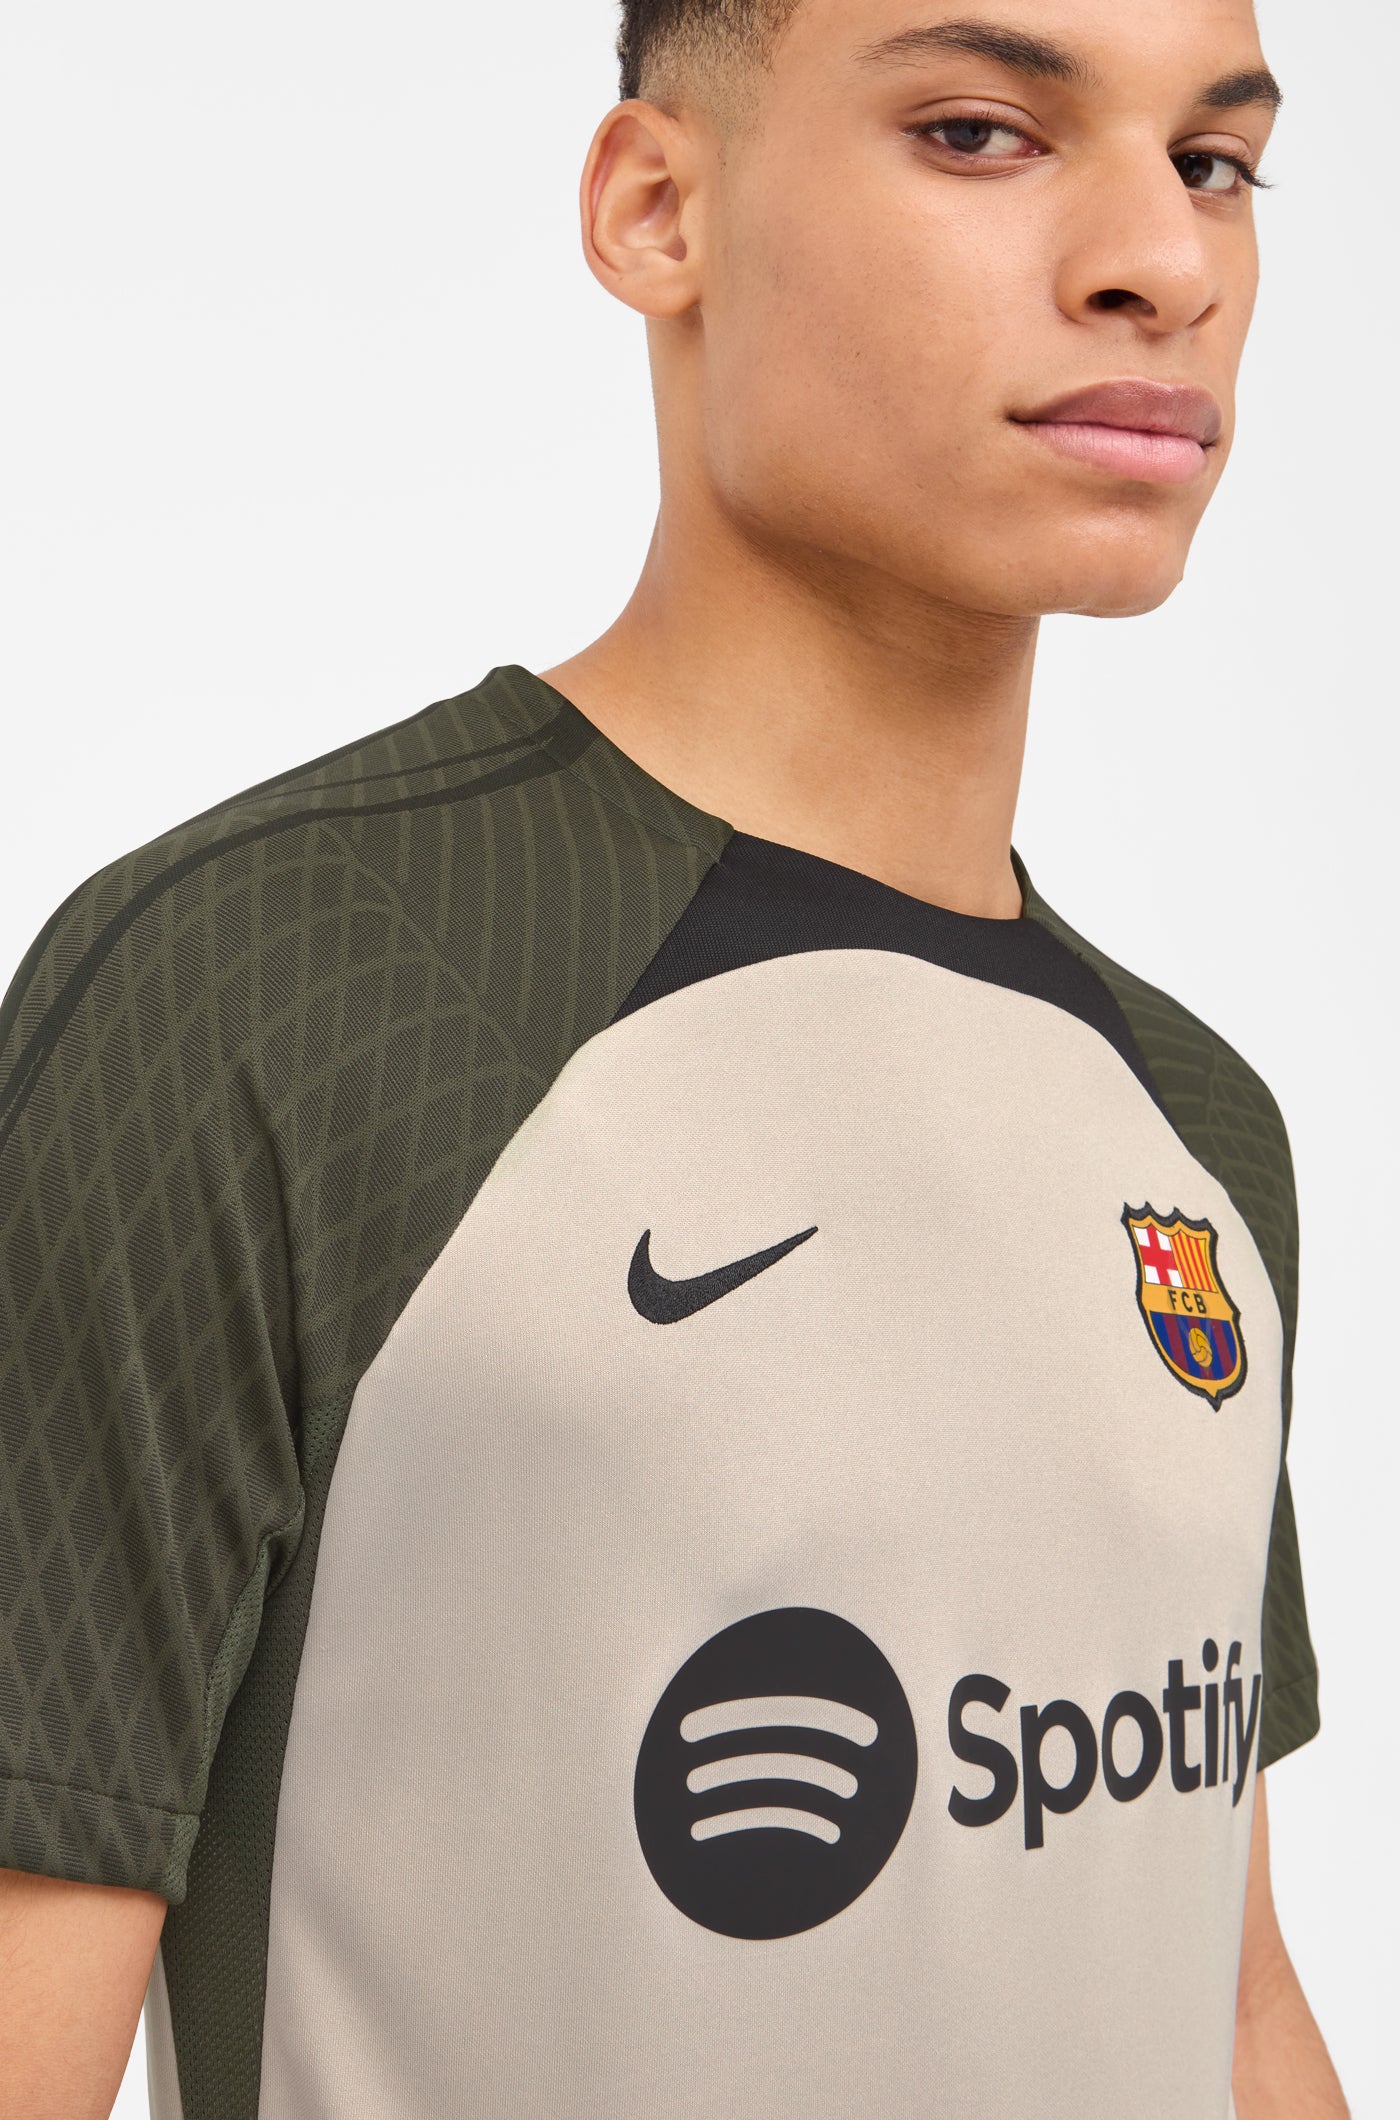 verwerken Versterker Spanning Training Shirt FC Barcelona 23/24 – Barça Official Store Spotify Camp Nou